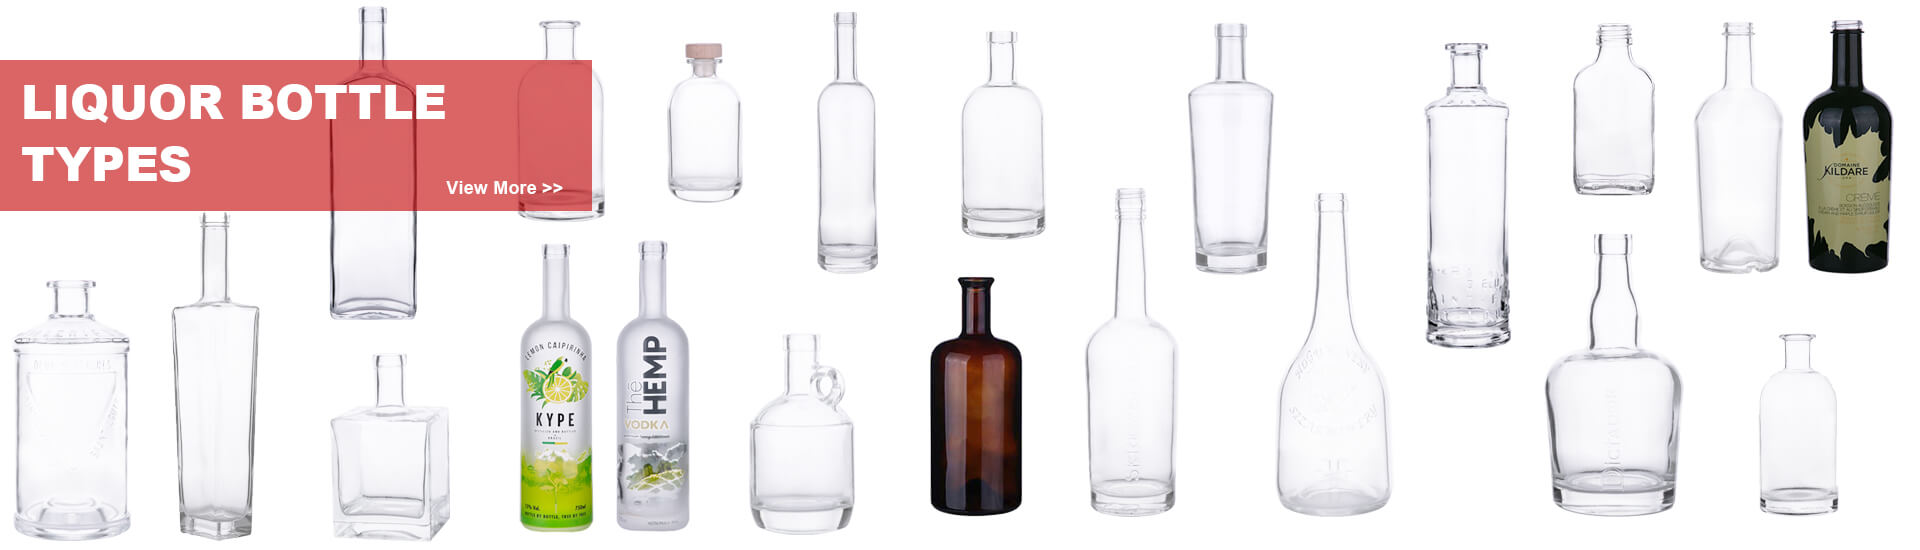 liquor bottles wholesale